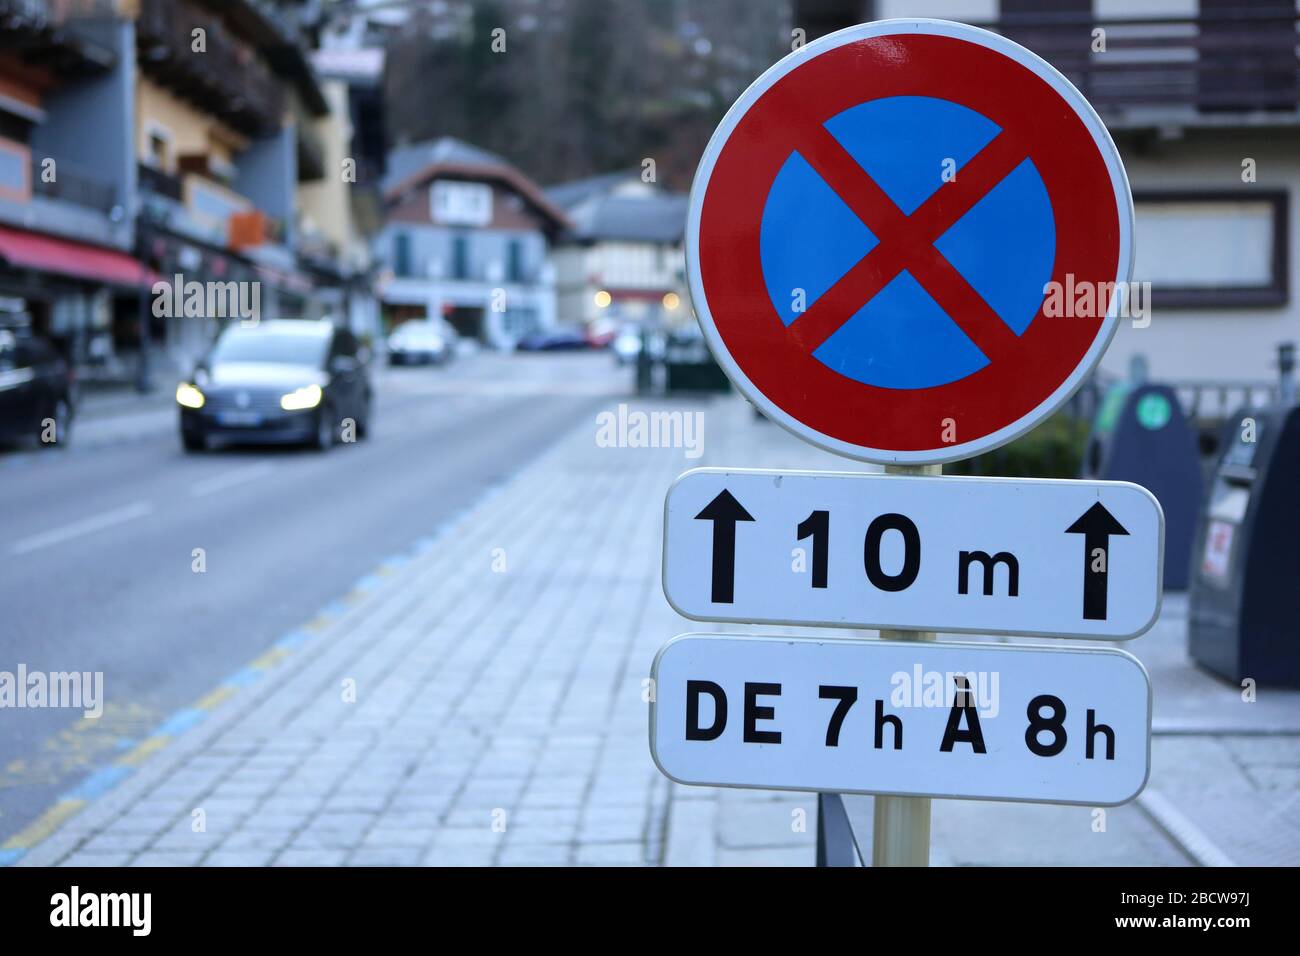 Signalisation routière : interdiction de stationner de 7h à 8h. Saint-Gervais-les-Bains. Haute-Savoie. France. Stock Photo